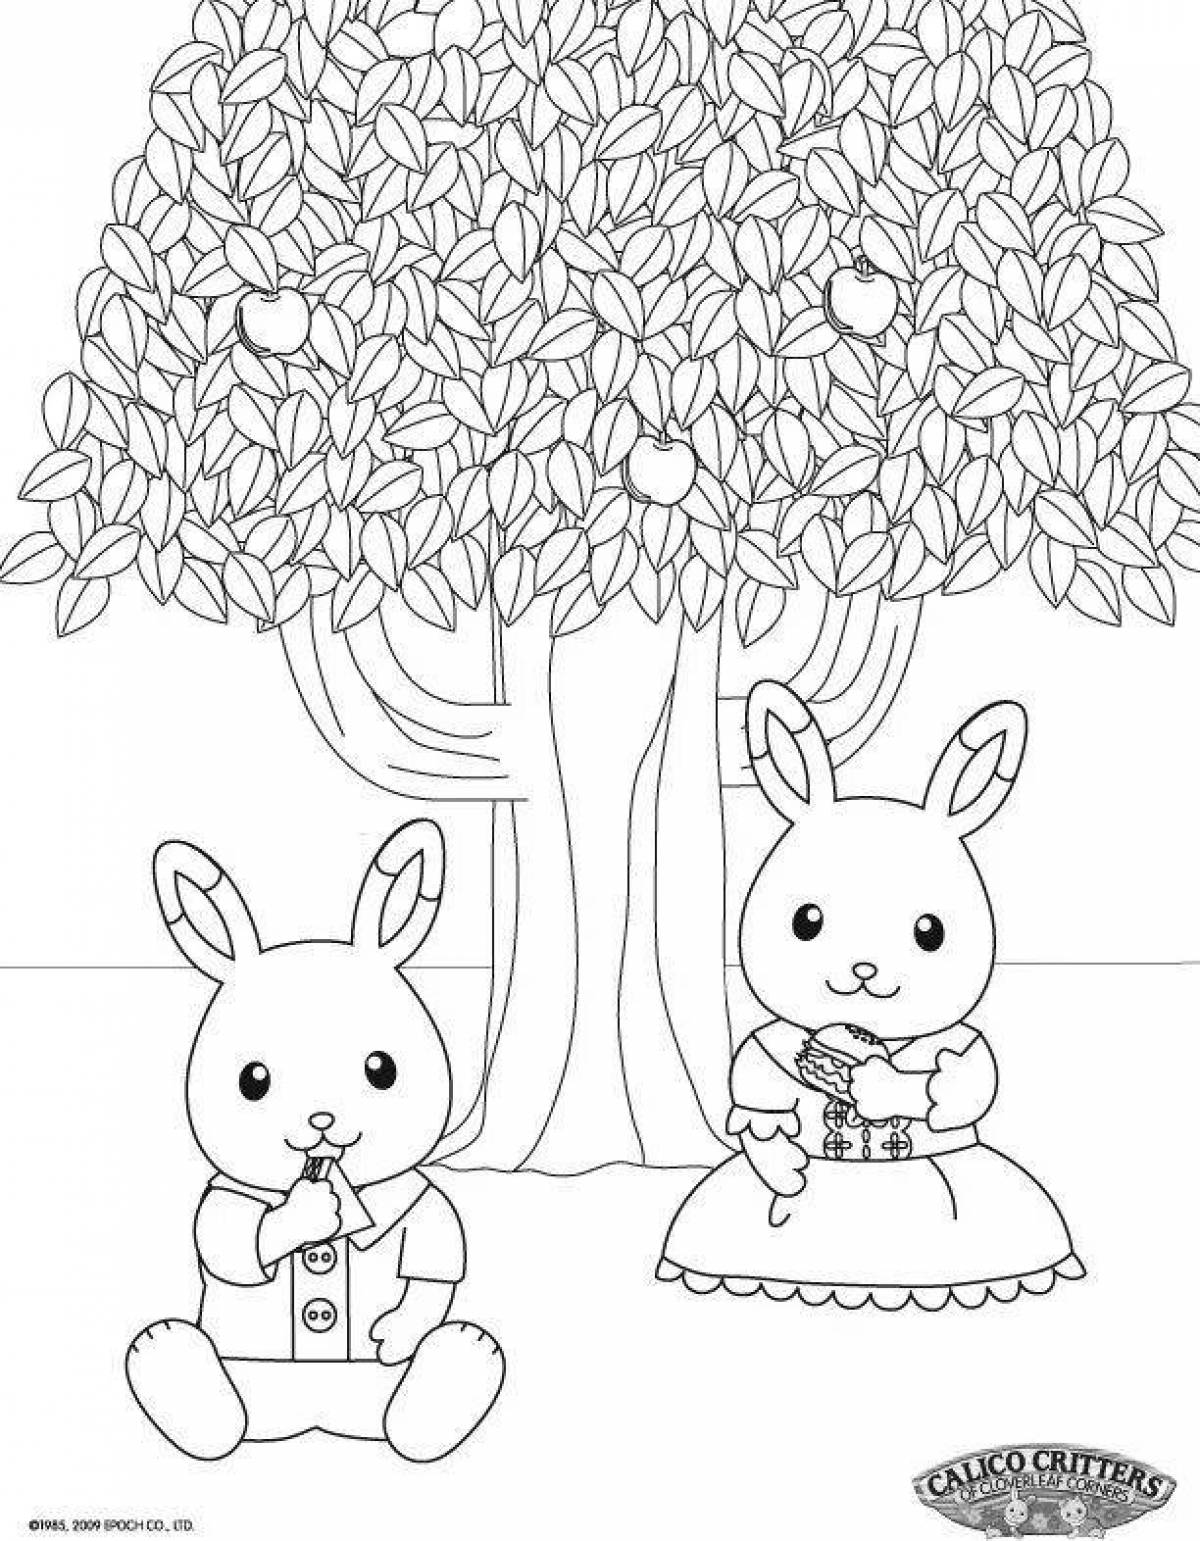 Cute sylvania family coloring book